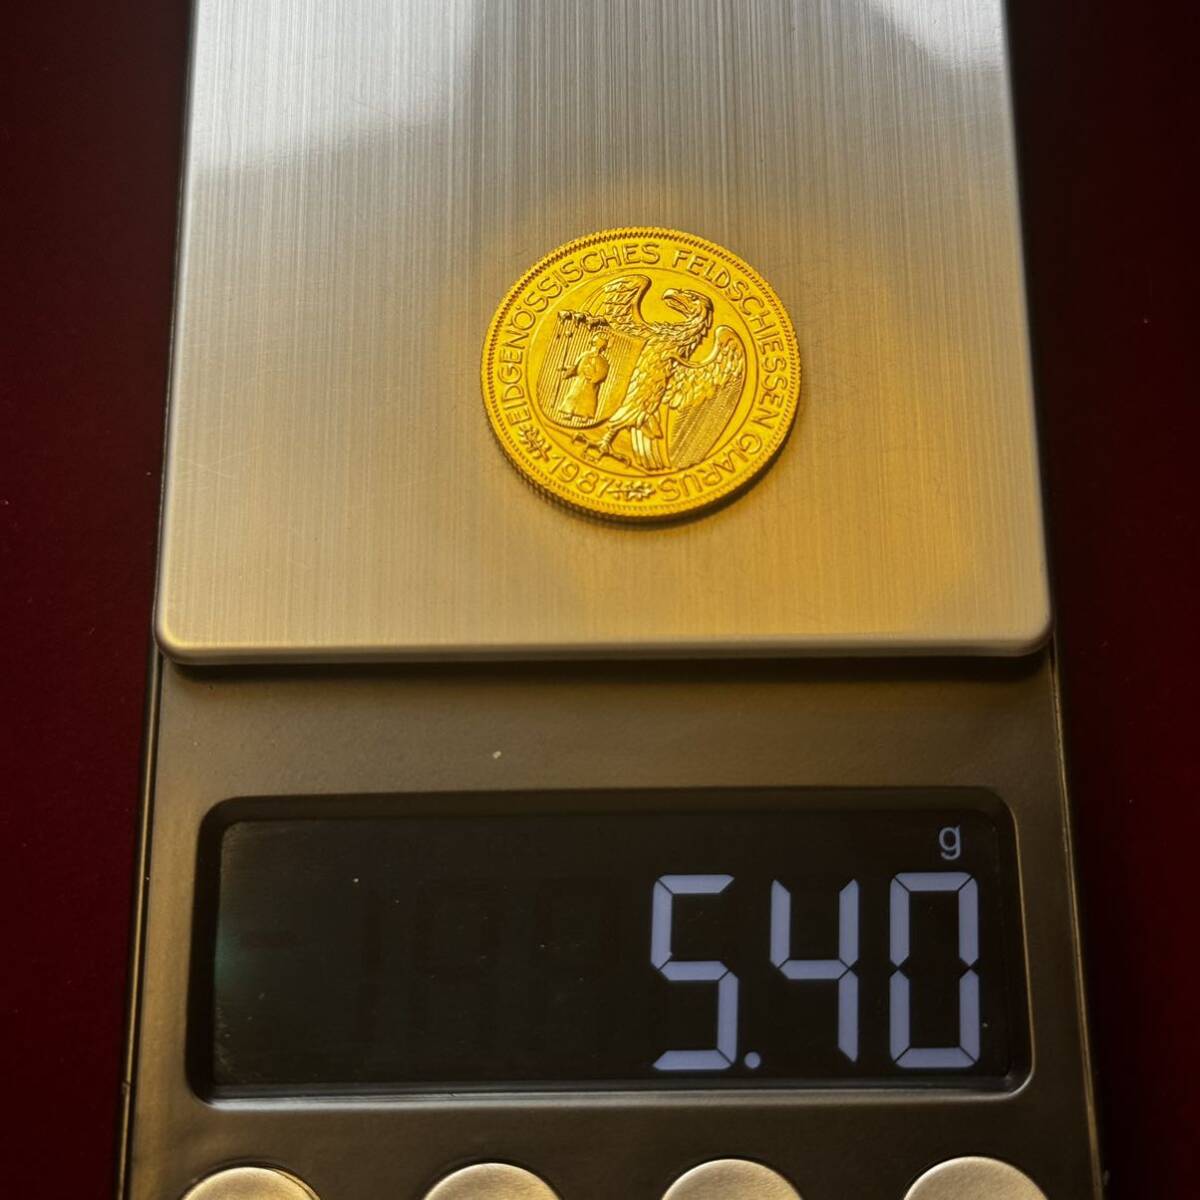 スイス 硬貨 古銭 1987年 グラールス射撃祭 グラールスの腕を掴むワシ ライフル 旗 50フラン 記念メダル コイン 金貨 外国古銭 海外硬貨 の画像6